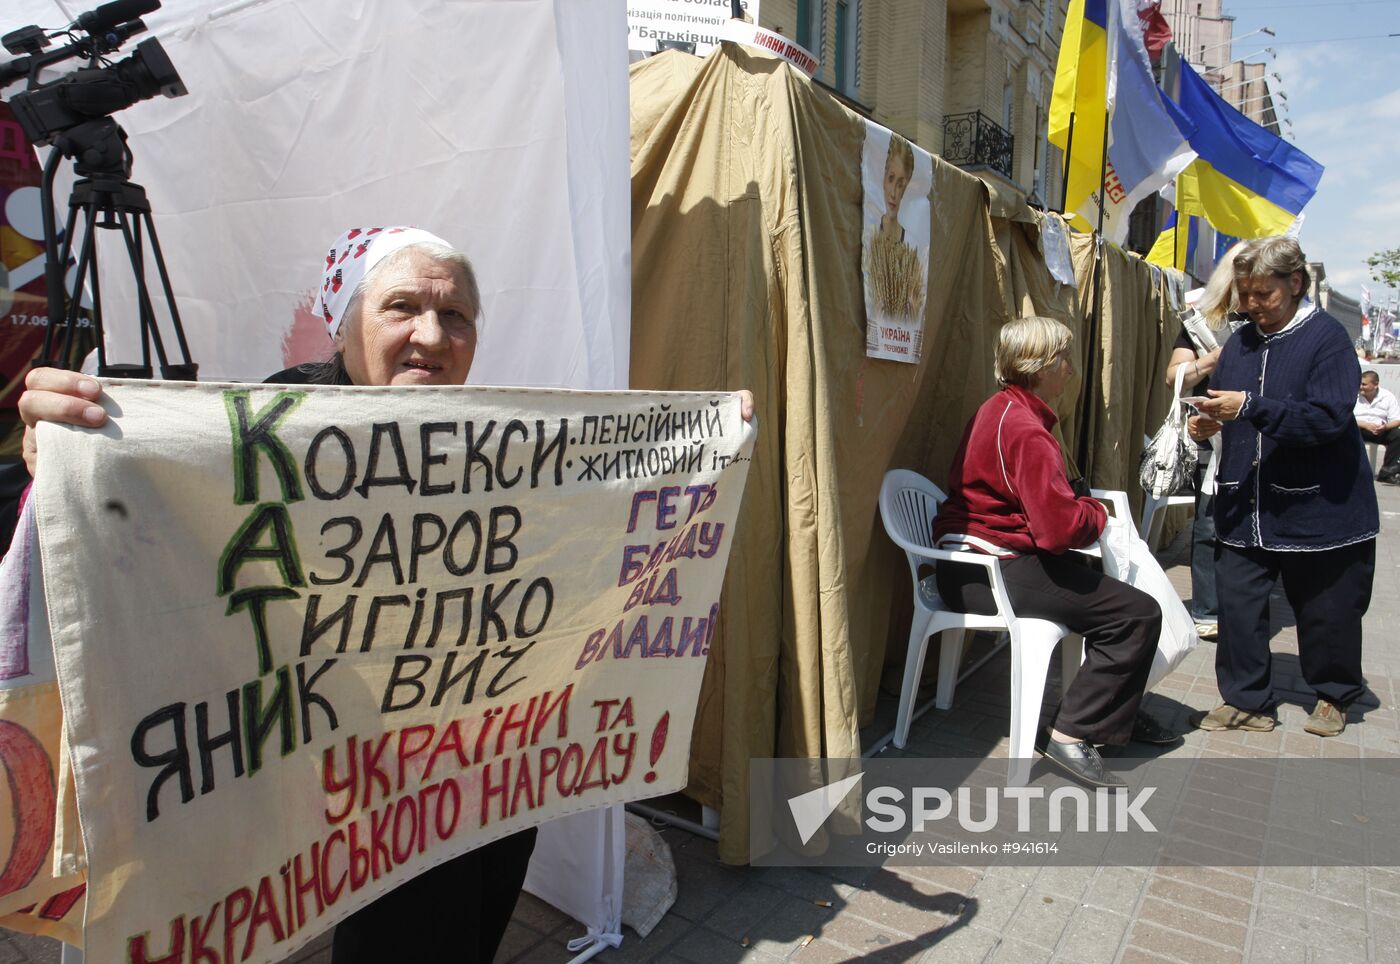 Yulia Tymoshenko fans' tent camp in Kiev